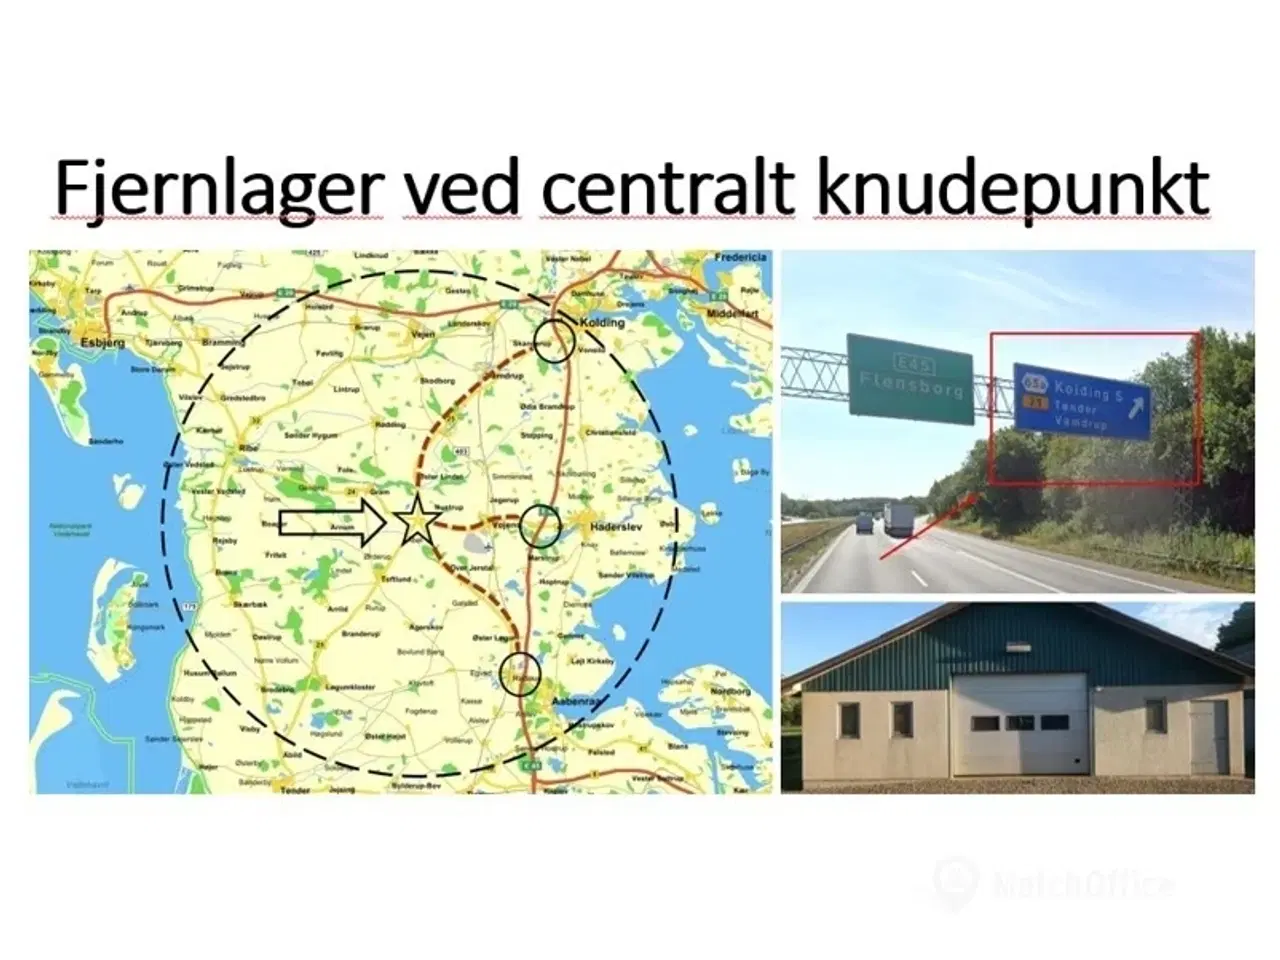 Billede 1 - Billigt fjernlager centralt i syd- og Sønderjylland ved stort trafik knudepunkt